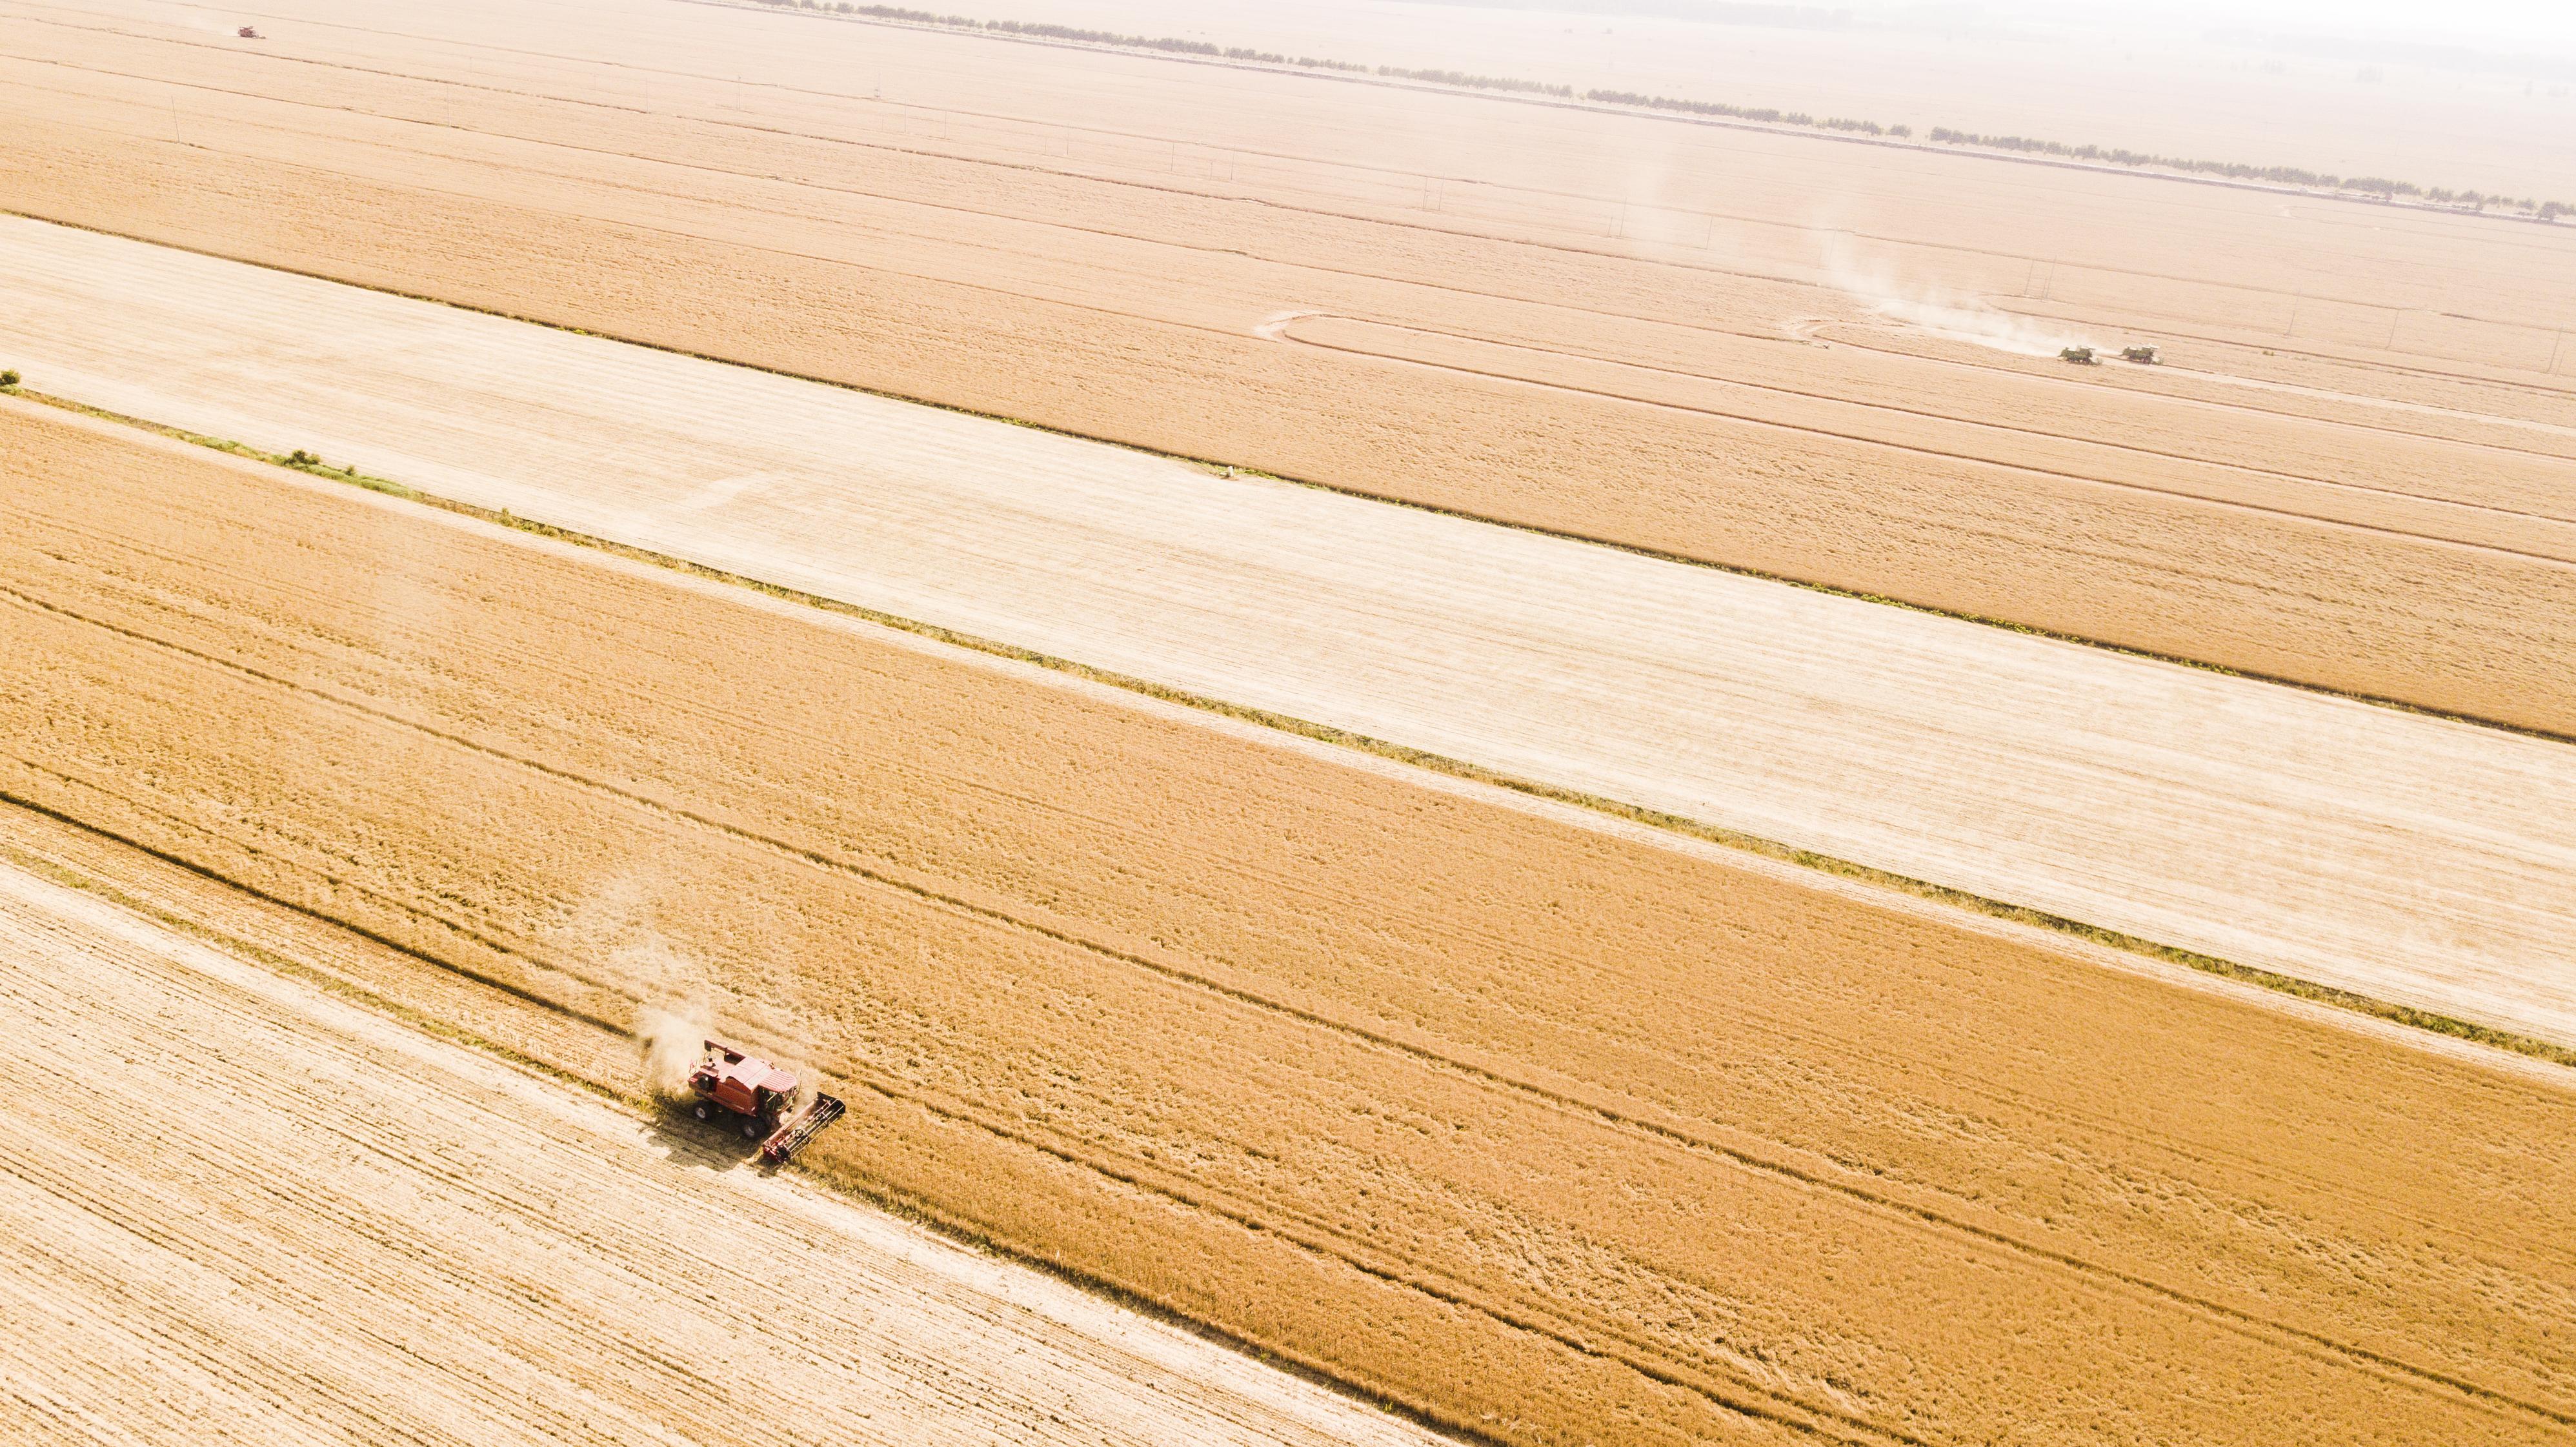 黄泛区农场10万亩小麦开镰收割